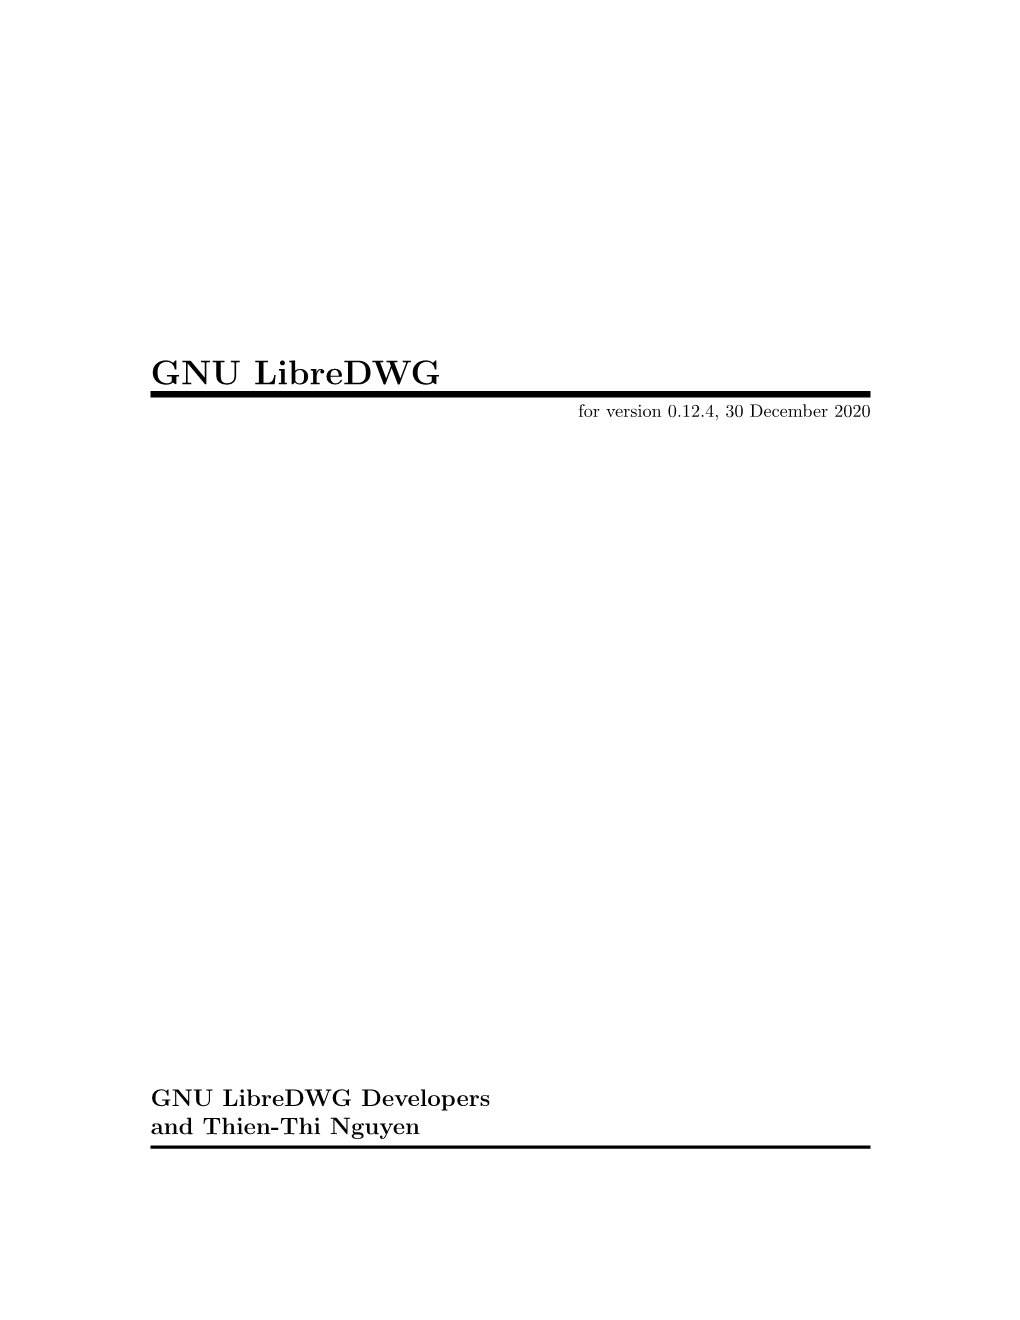 GNU Libredwg for Version 0.12.4, 30 December 2020